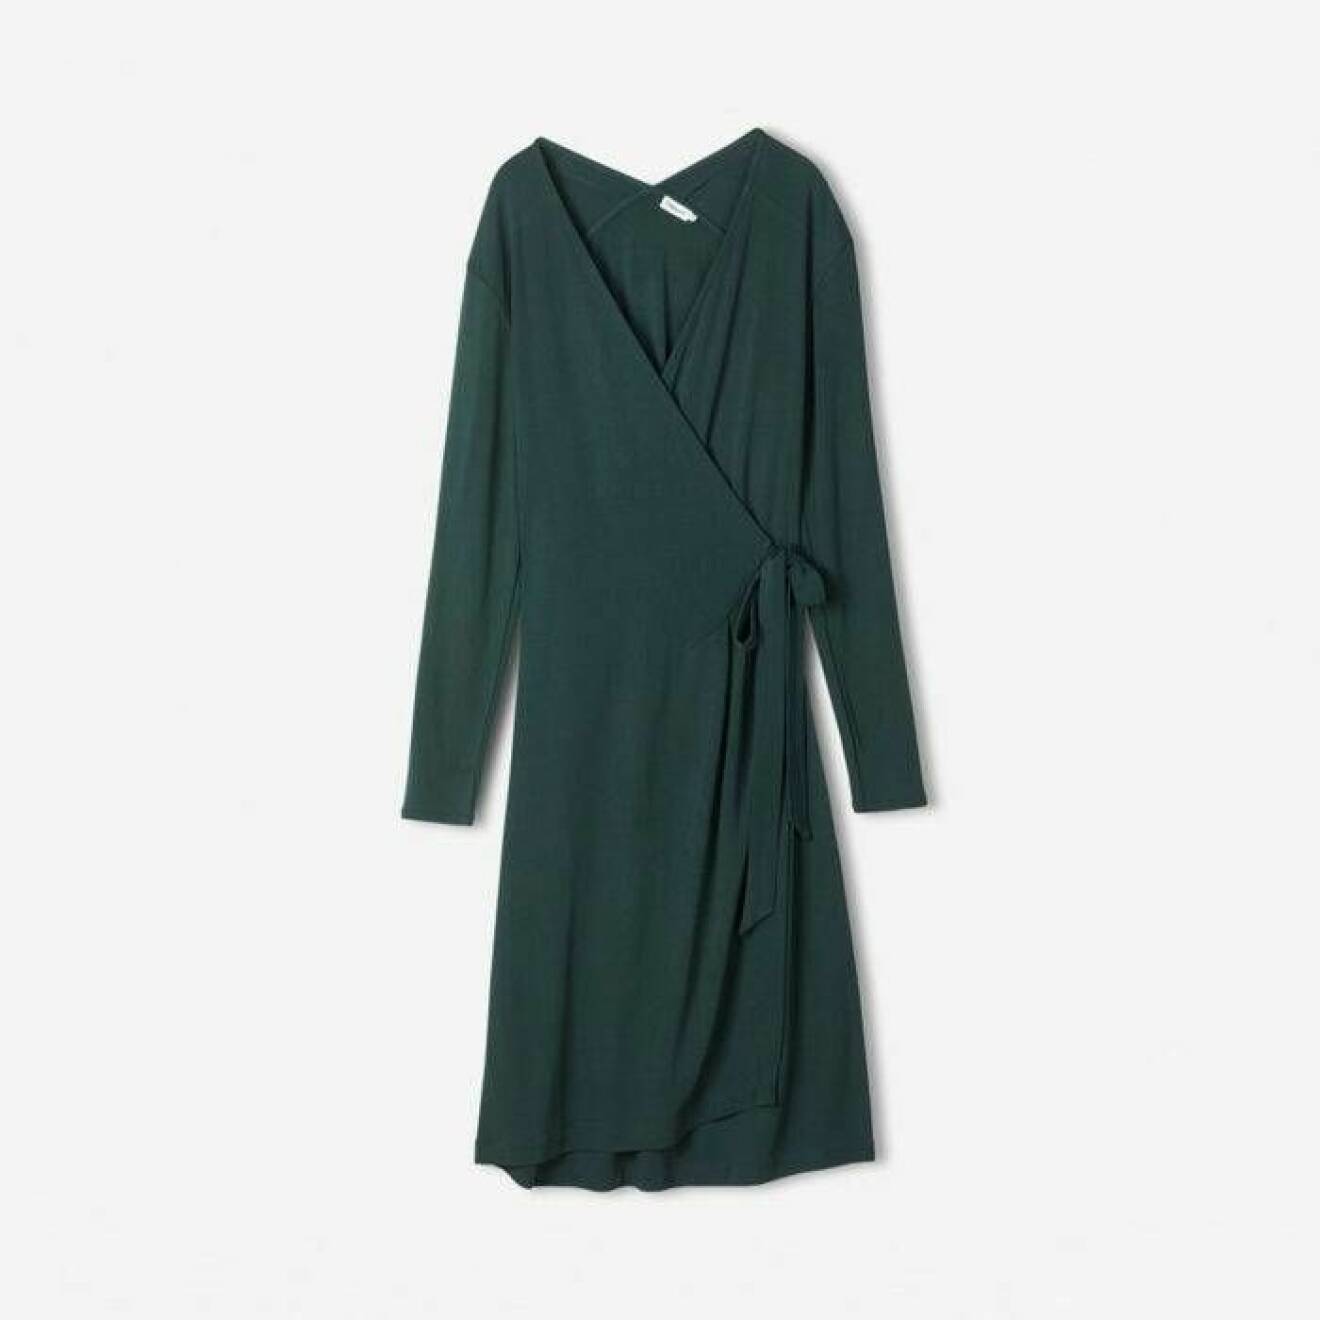 Grön klänning inspirerad av Meghan Markle